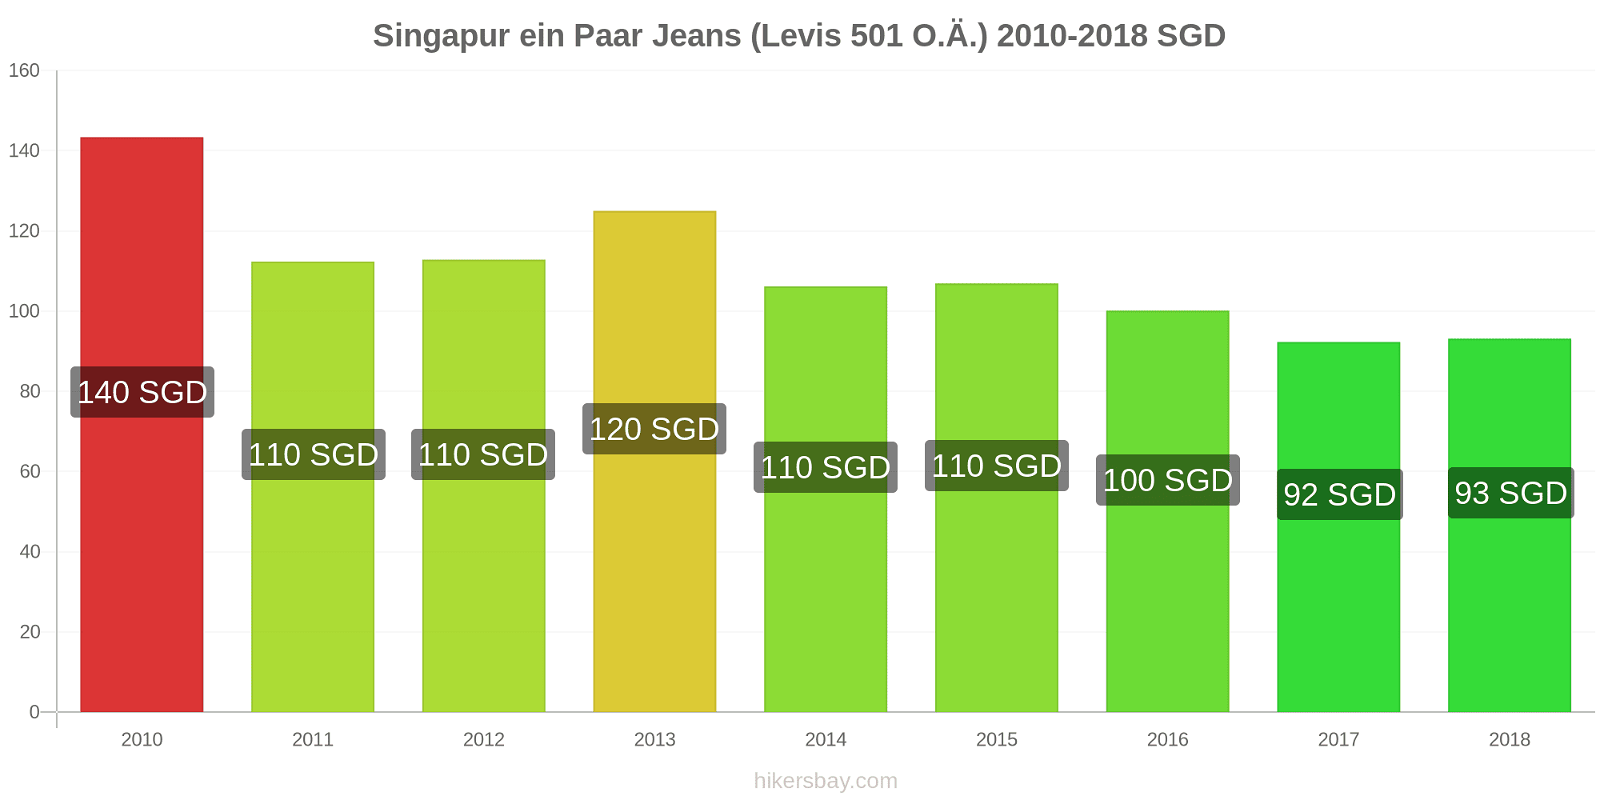 Singapur Preisänderungen 1 Paar Jeans (Levis 501 oder ähnlich) hikersbay.com